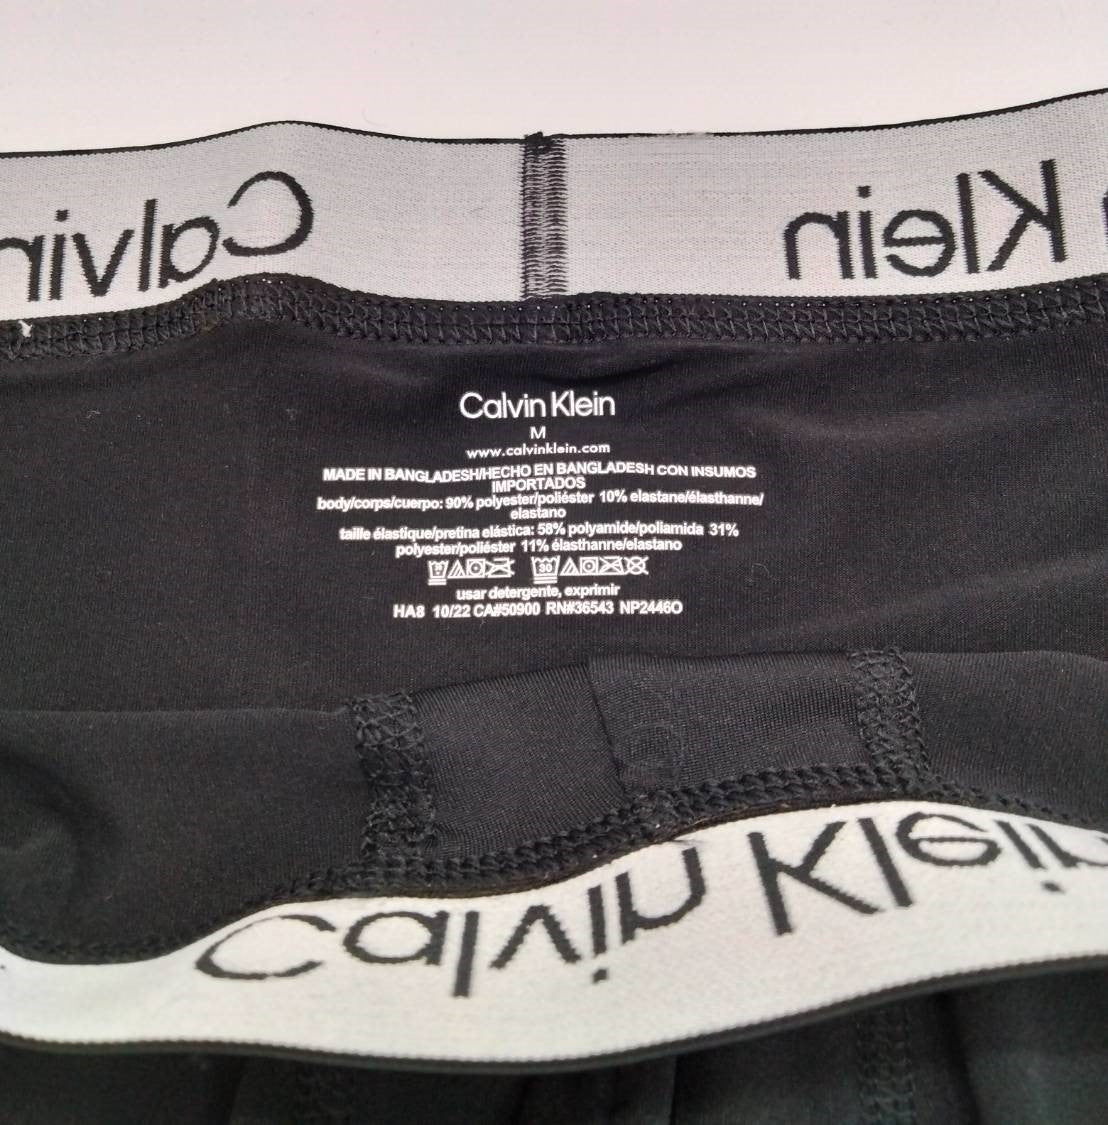 Calvin Klein(カルバンクライン) ローライズ ボクサーパンツ Black 3枚 NP2446O